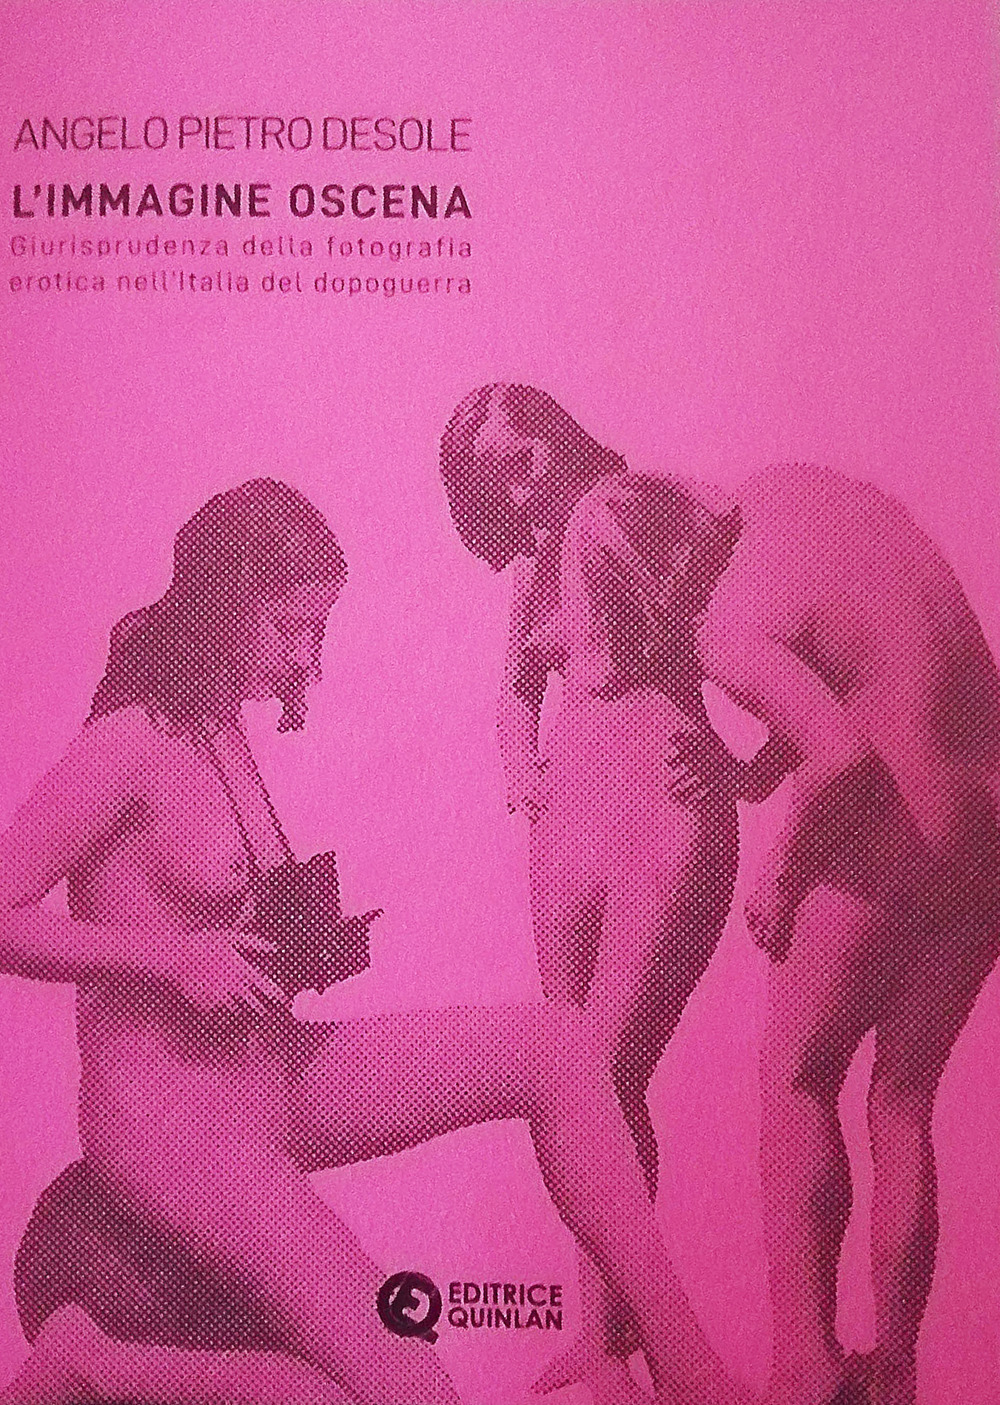 L'immagine oscena. Giurisprudenza della fotografia erotica nell'Italia dopoguerra